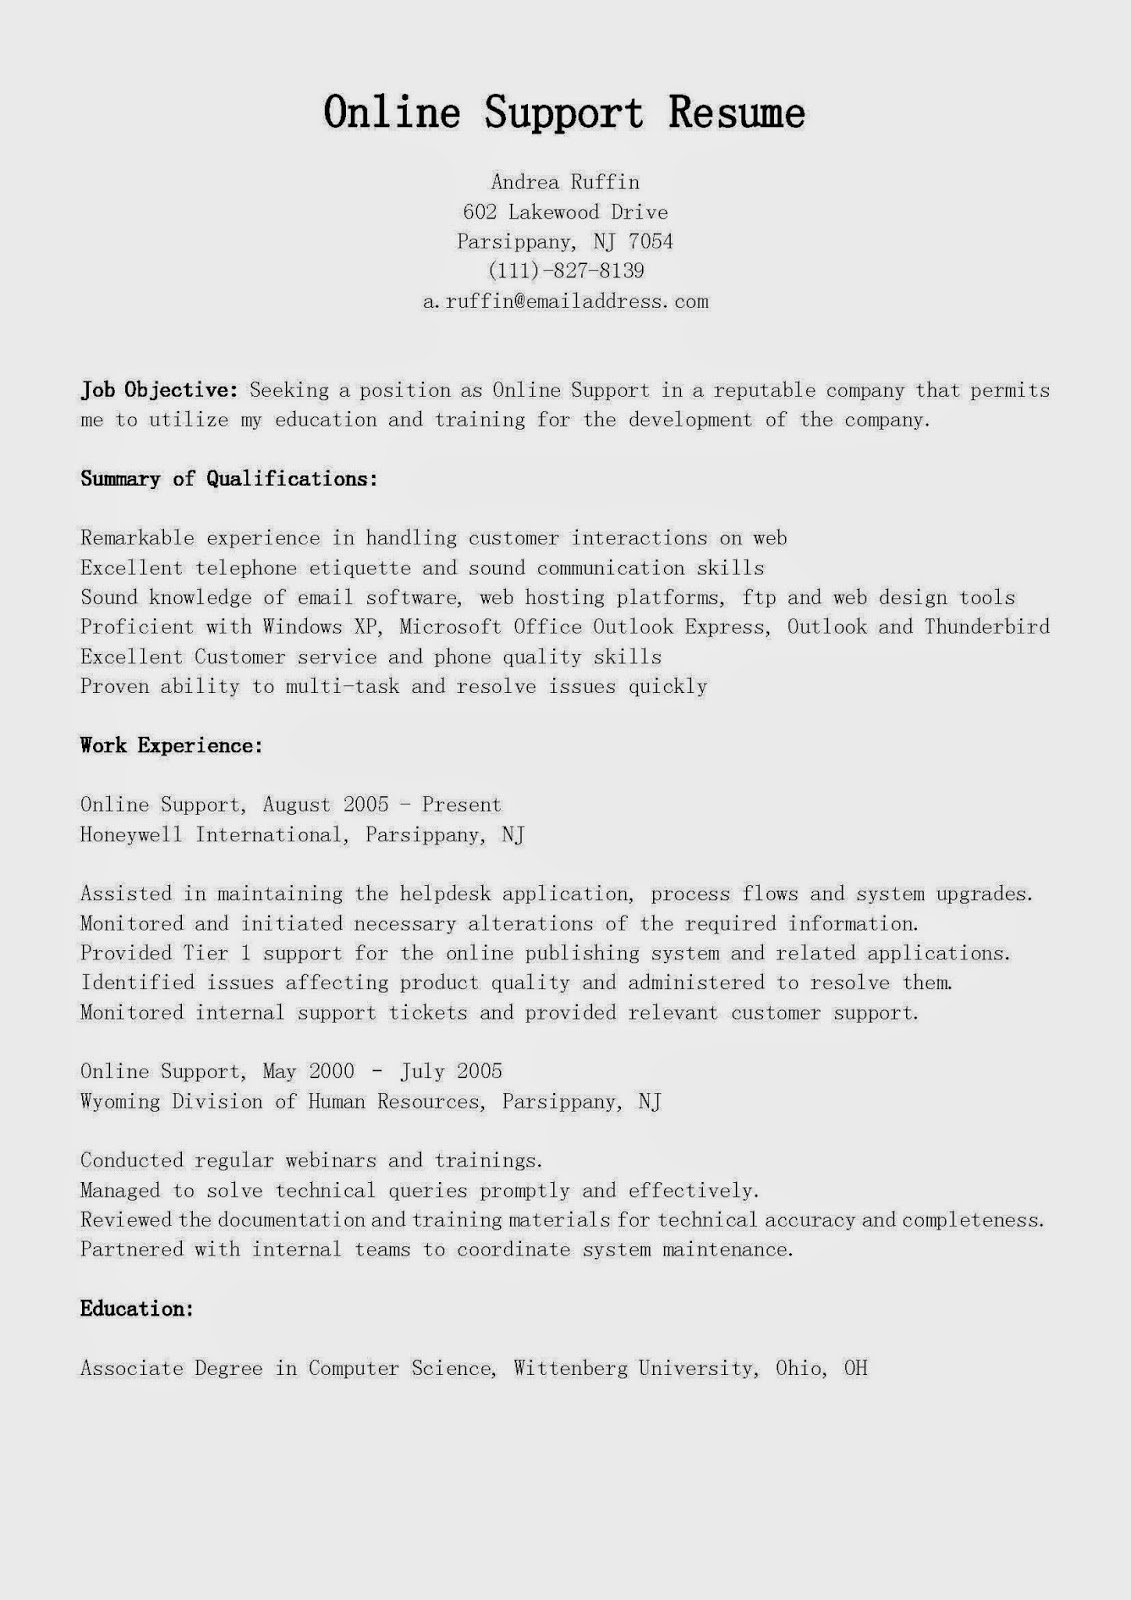 Resume writing service india